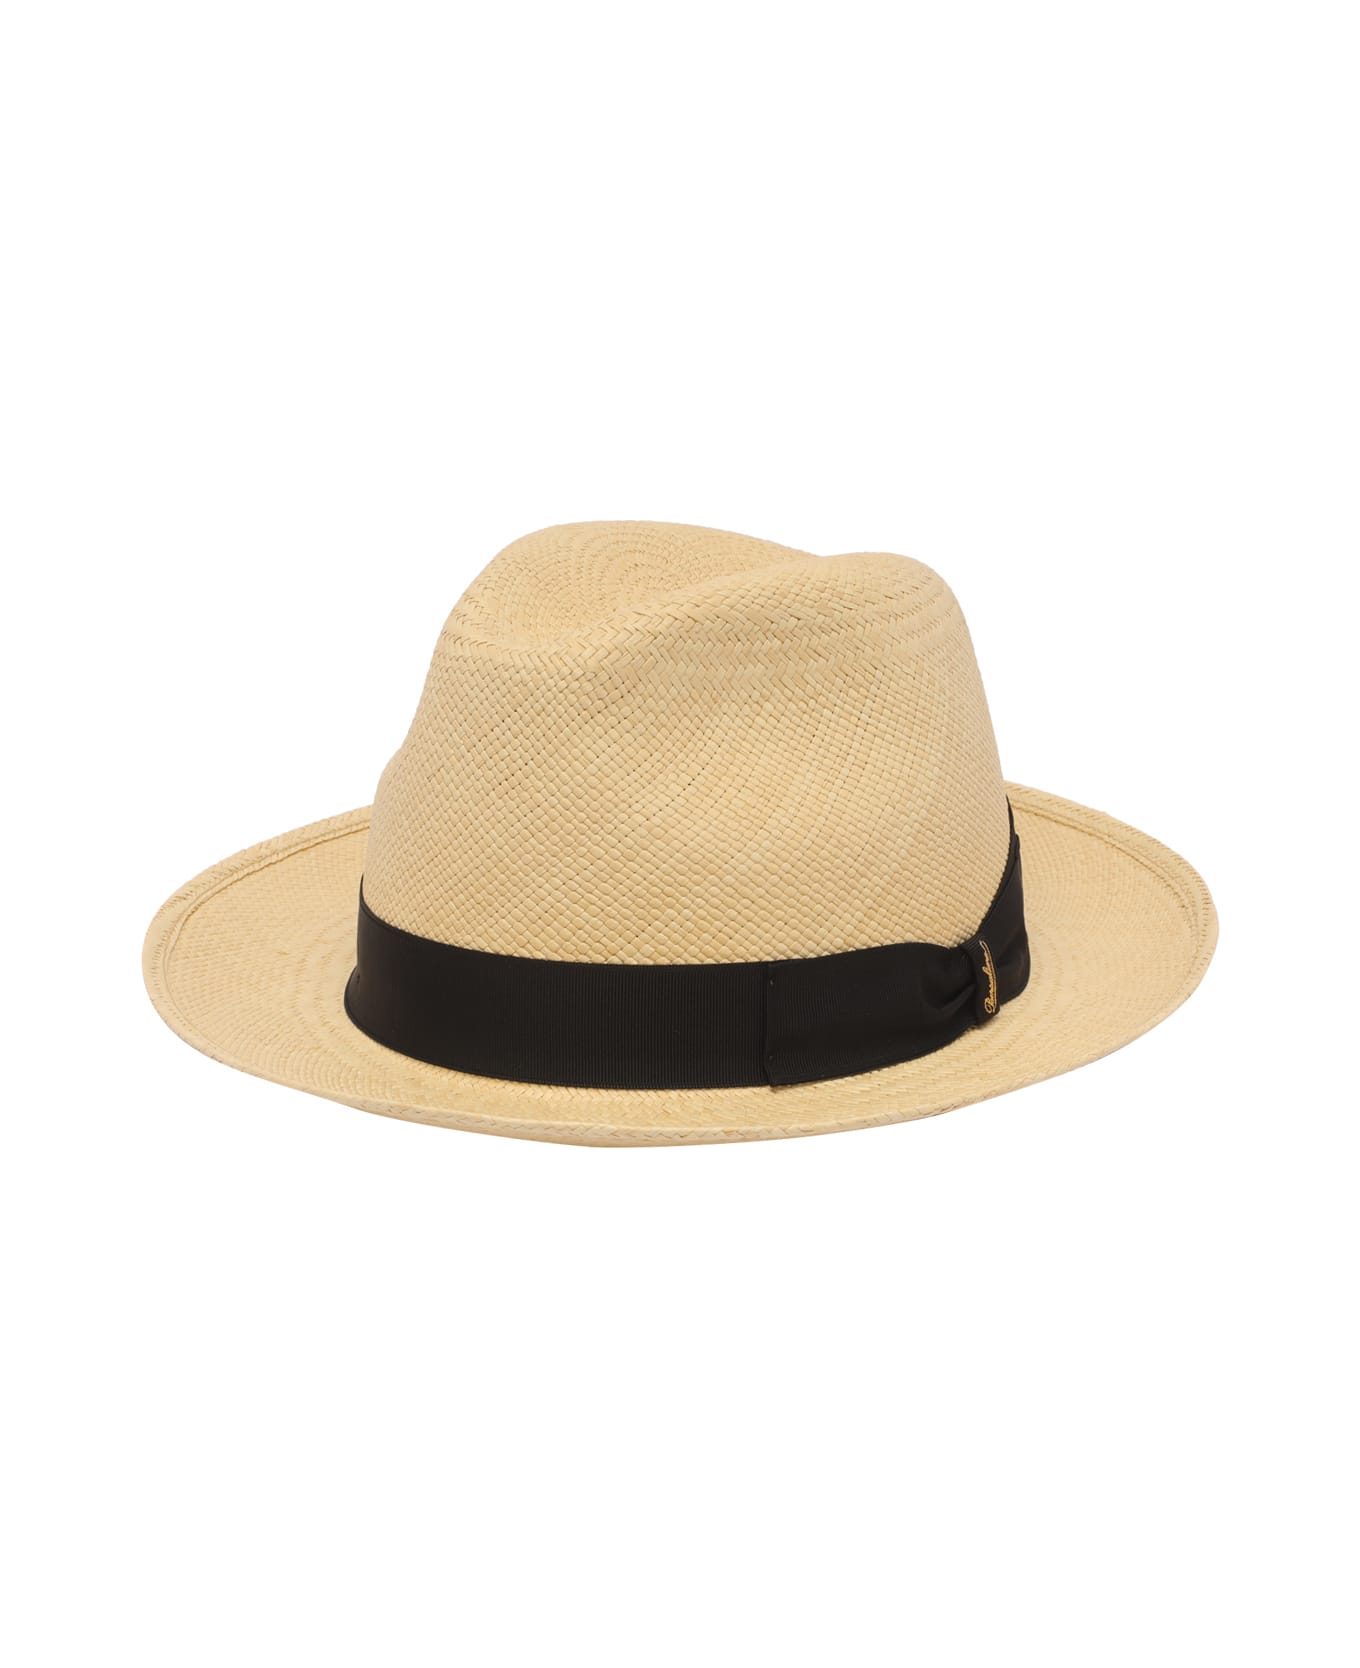 Borsalino Quito Panama Bucket Hat - Natural 帽子